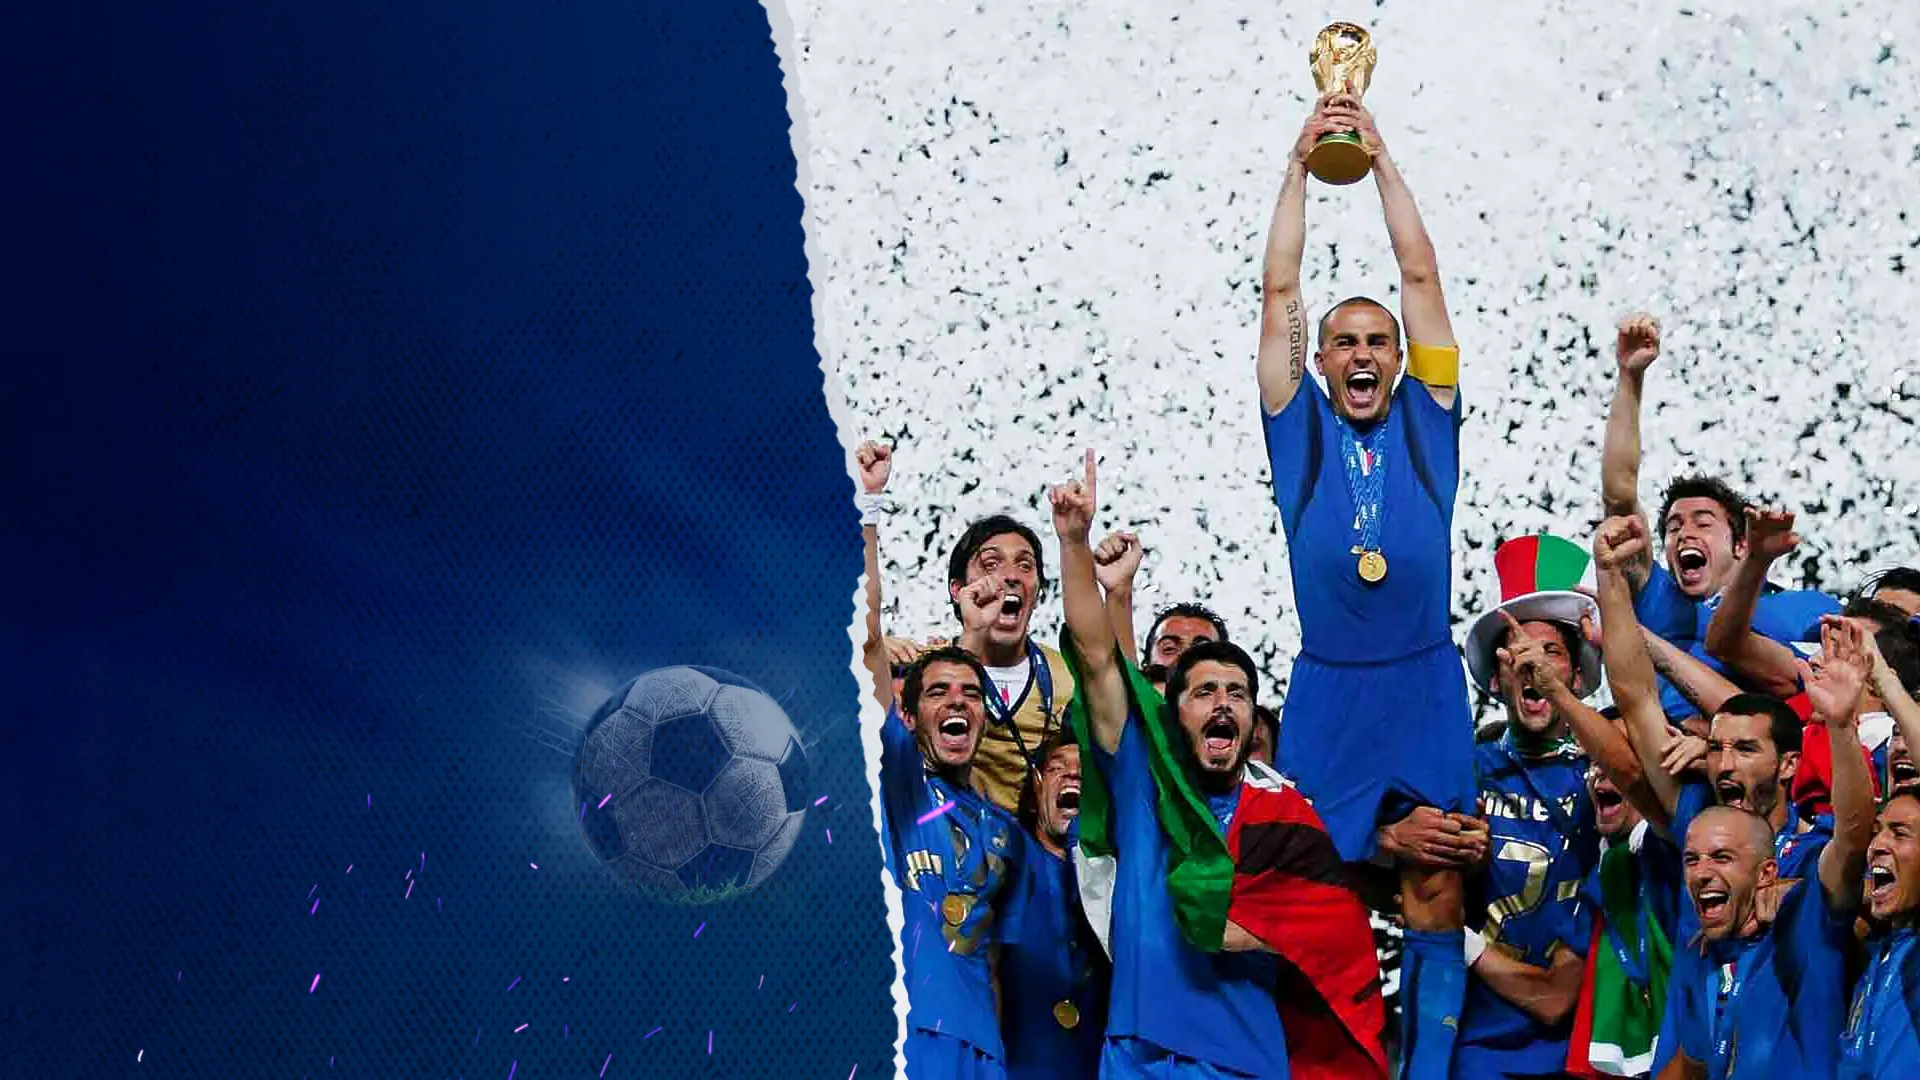 Italia Và Câu Chuyện Cổ Tích World Cup 2006 | Nhiệm Vụ Bất Khả Thi